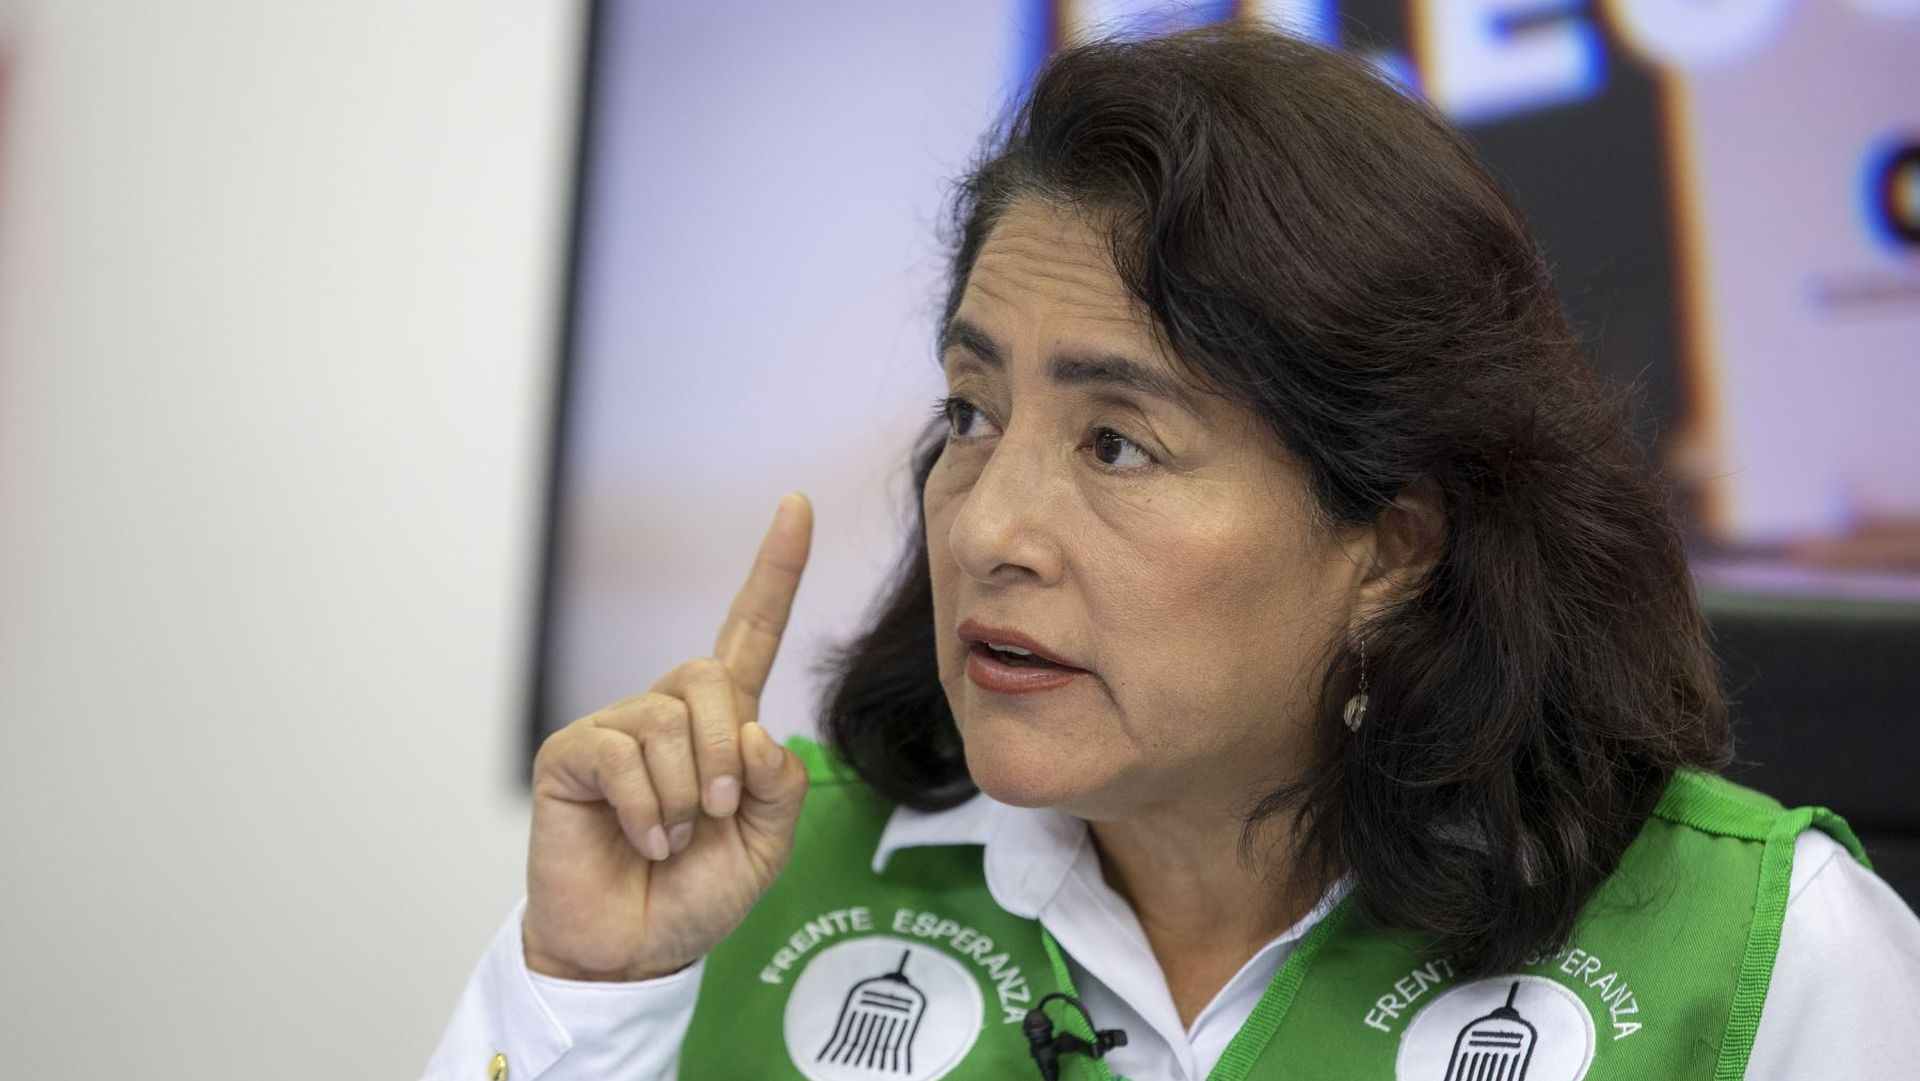 Elizabeth León, candidata del Frente Esperanza: “La población vota analizando el final del periodo electoral” | ENTREVISTA